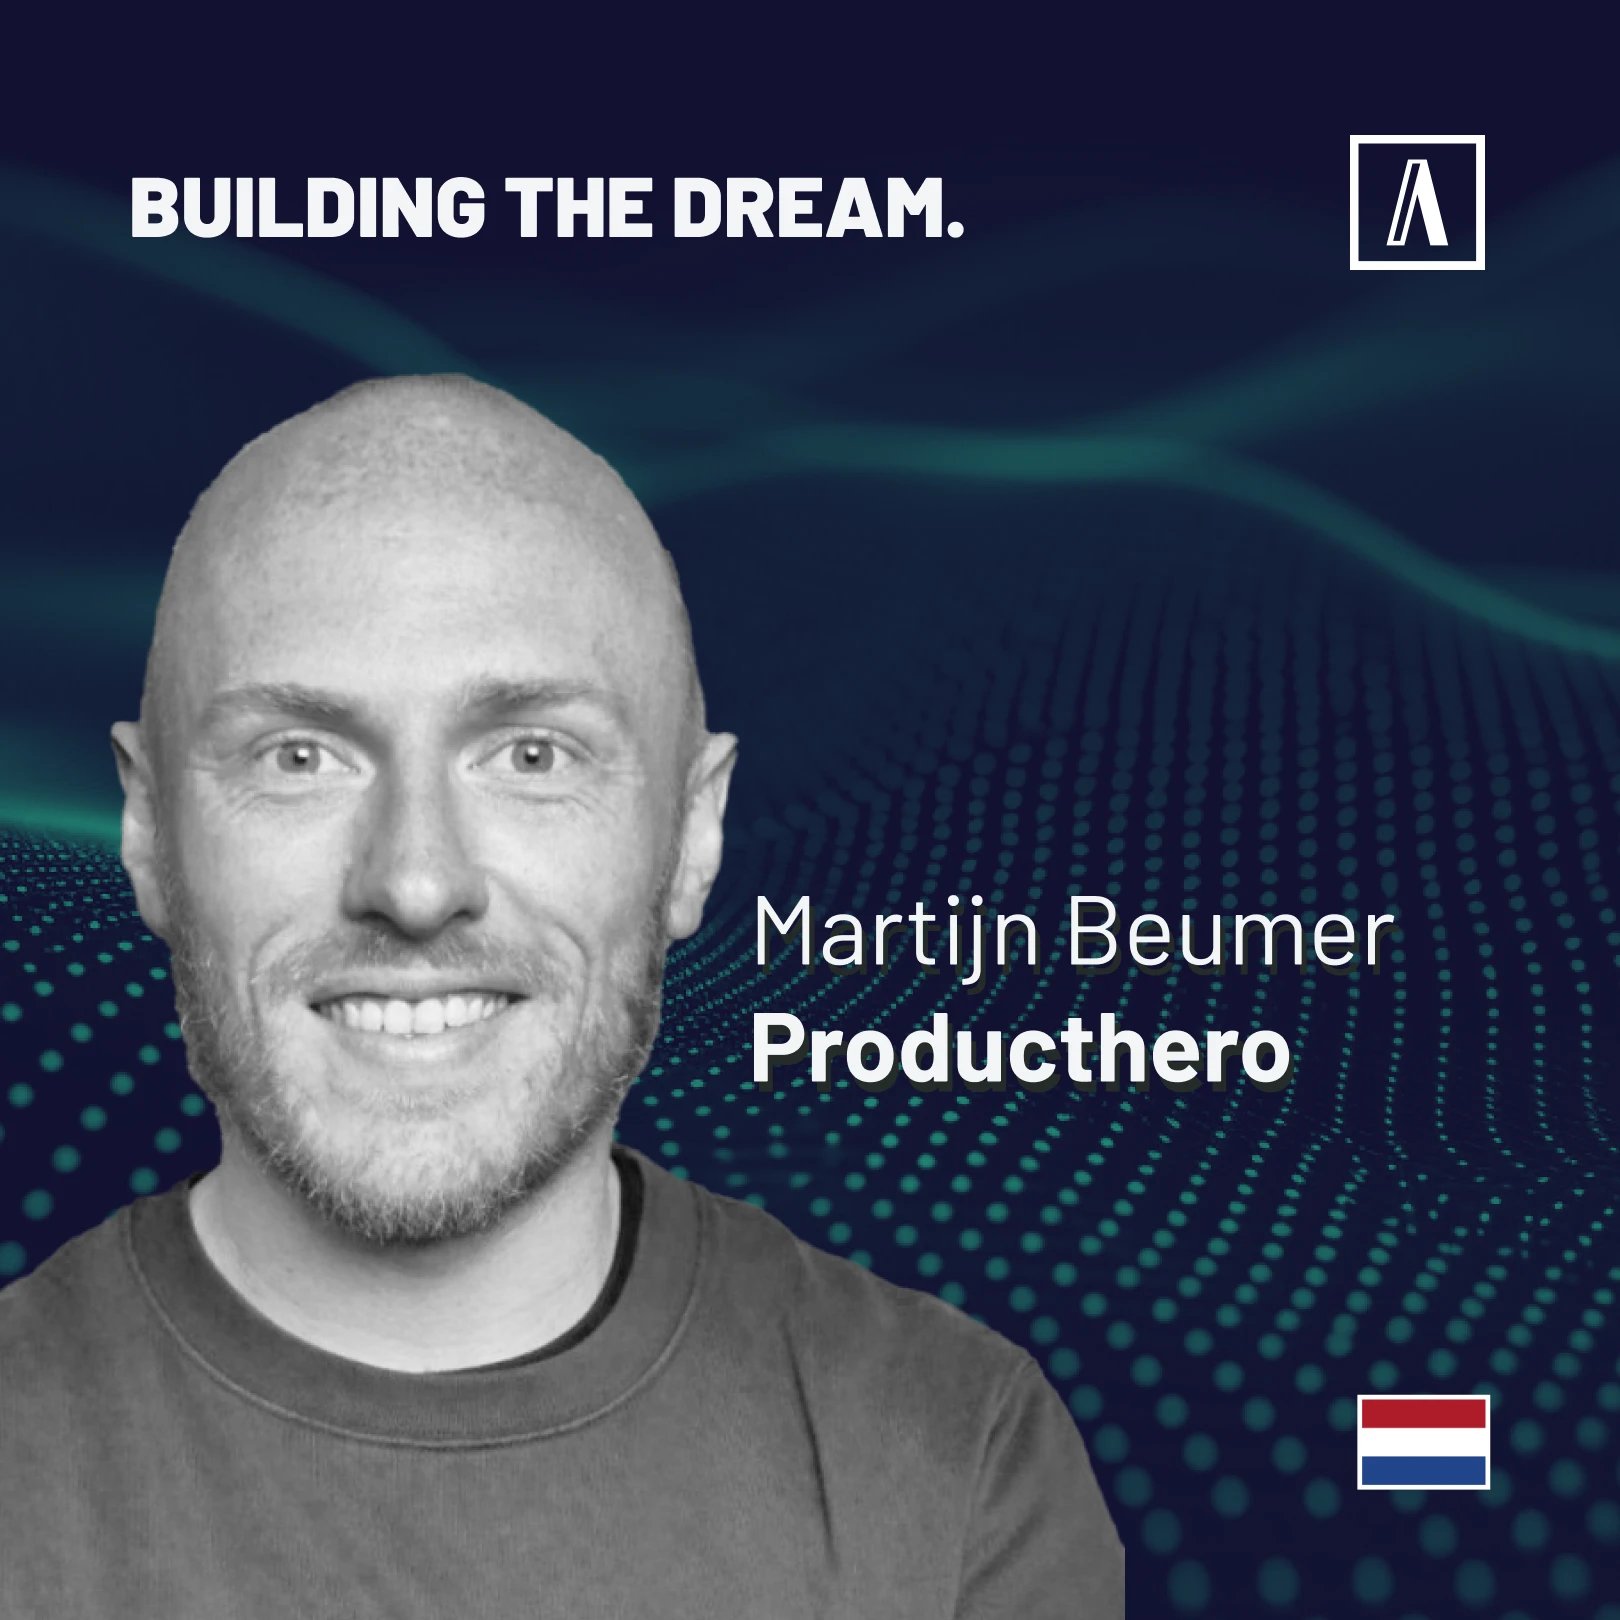 Martijn Beumer - ProductHero